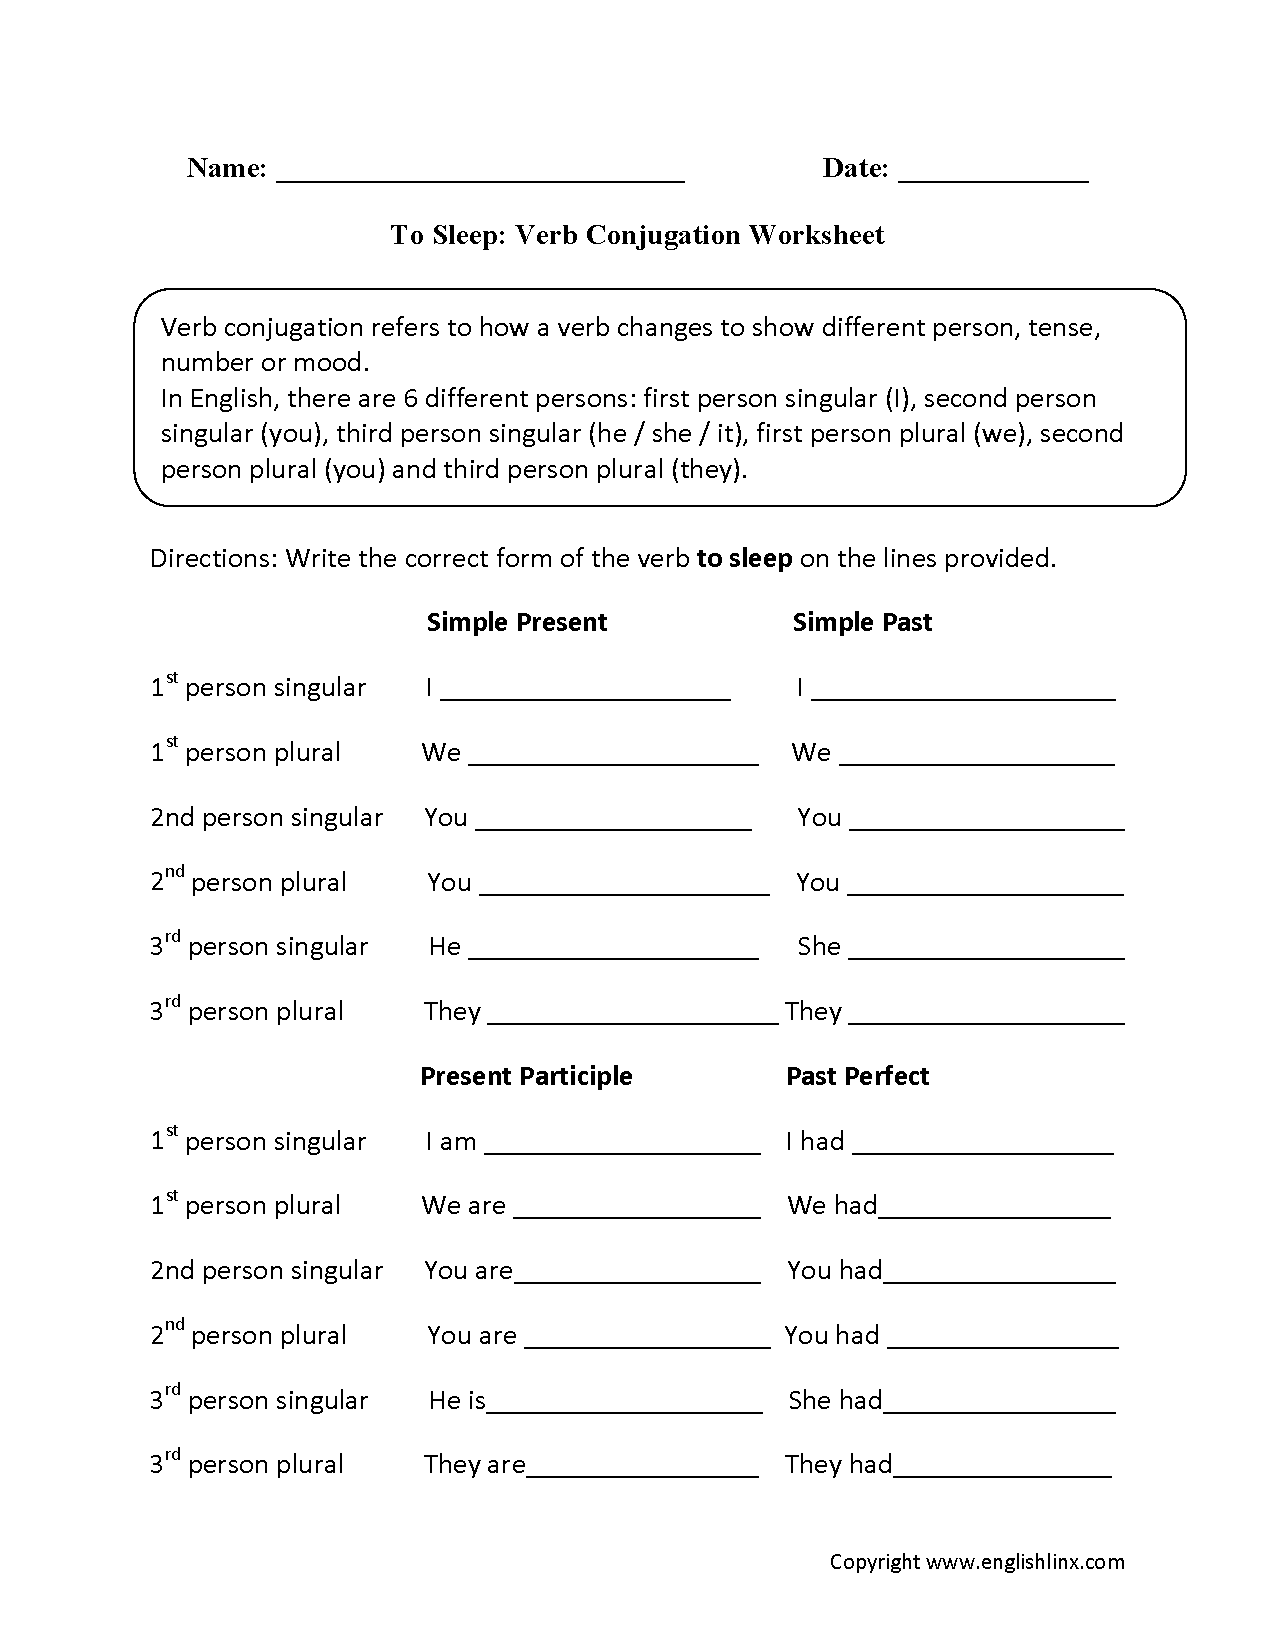 To Sleep Verb Conjugation Worksheets